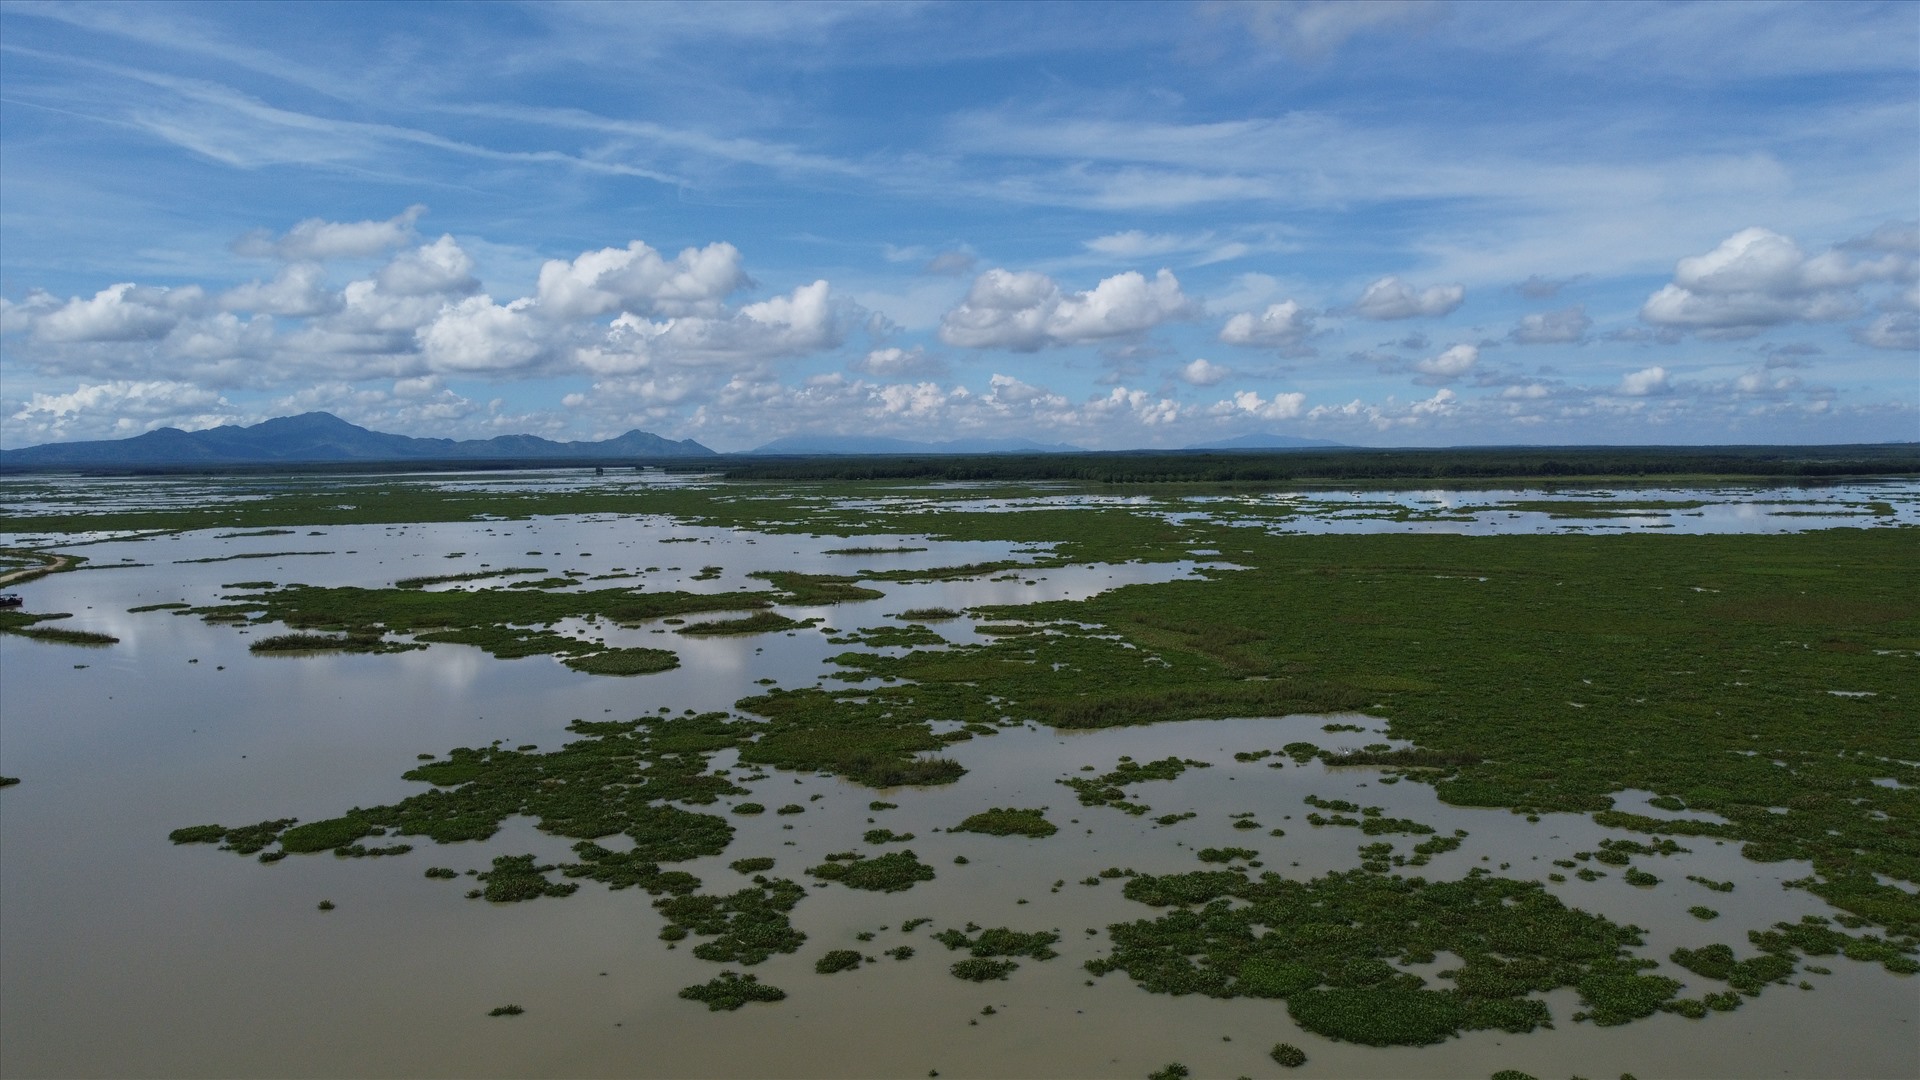 Hồ Biển Lạc ở Bình Thuận. Ảnh: Duy Tuấn